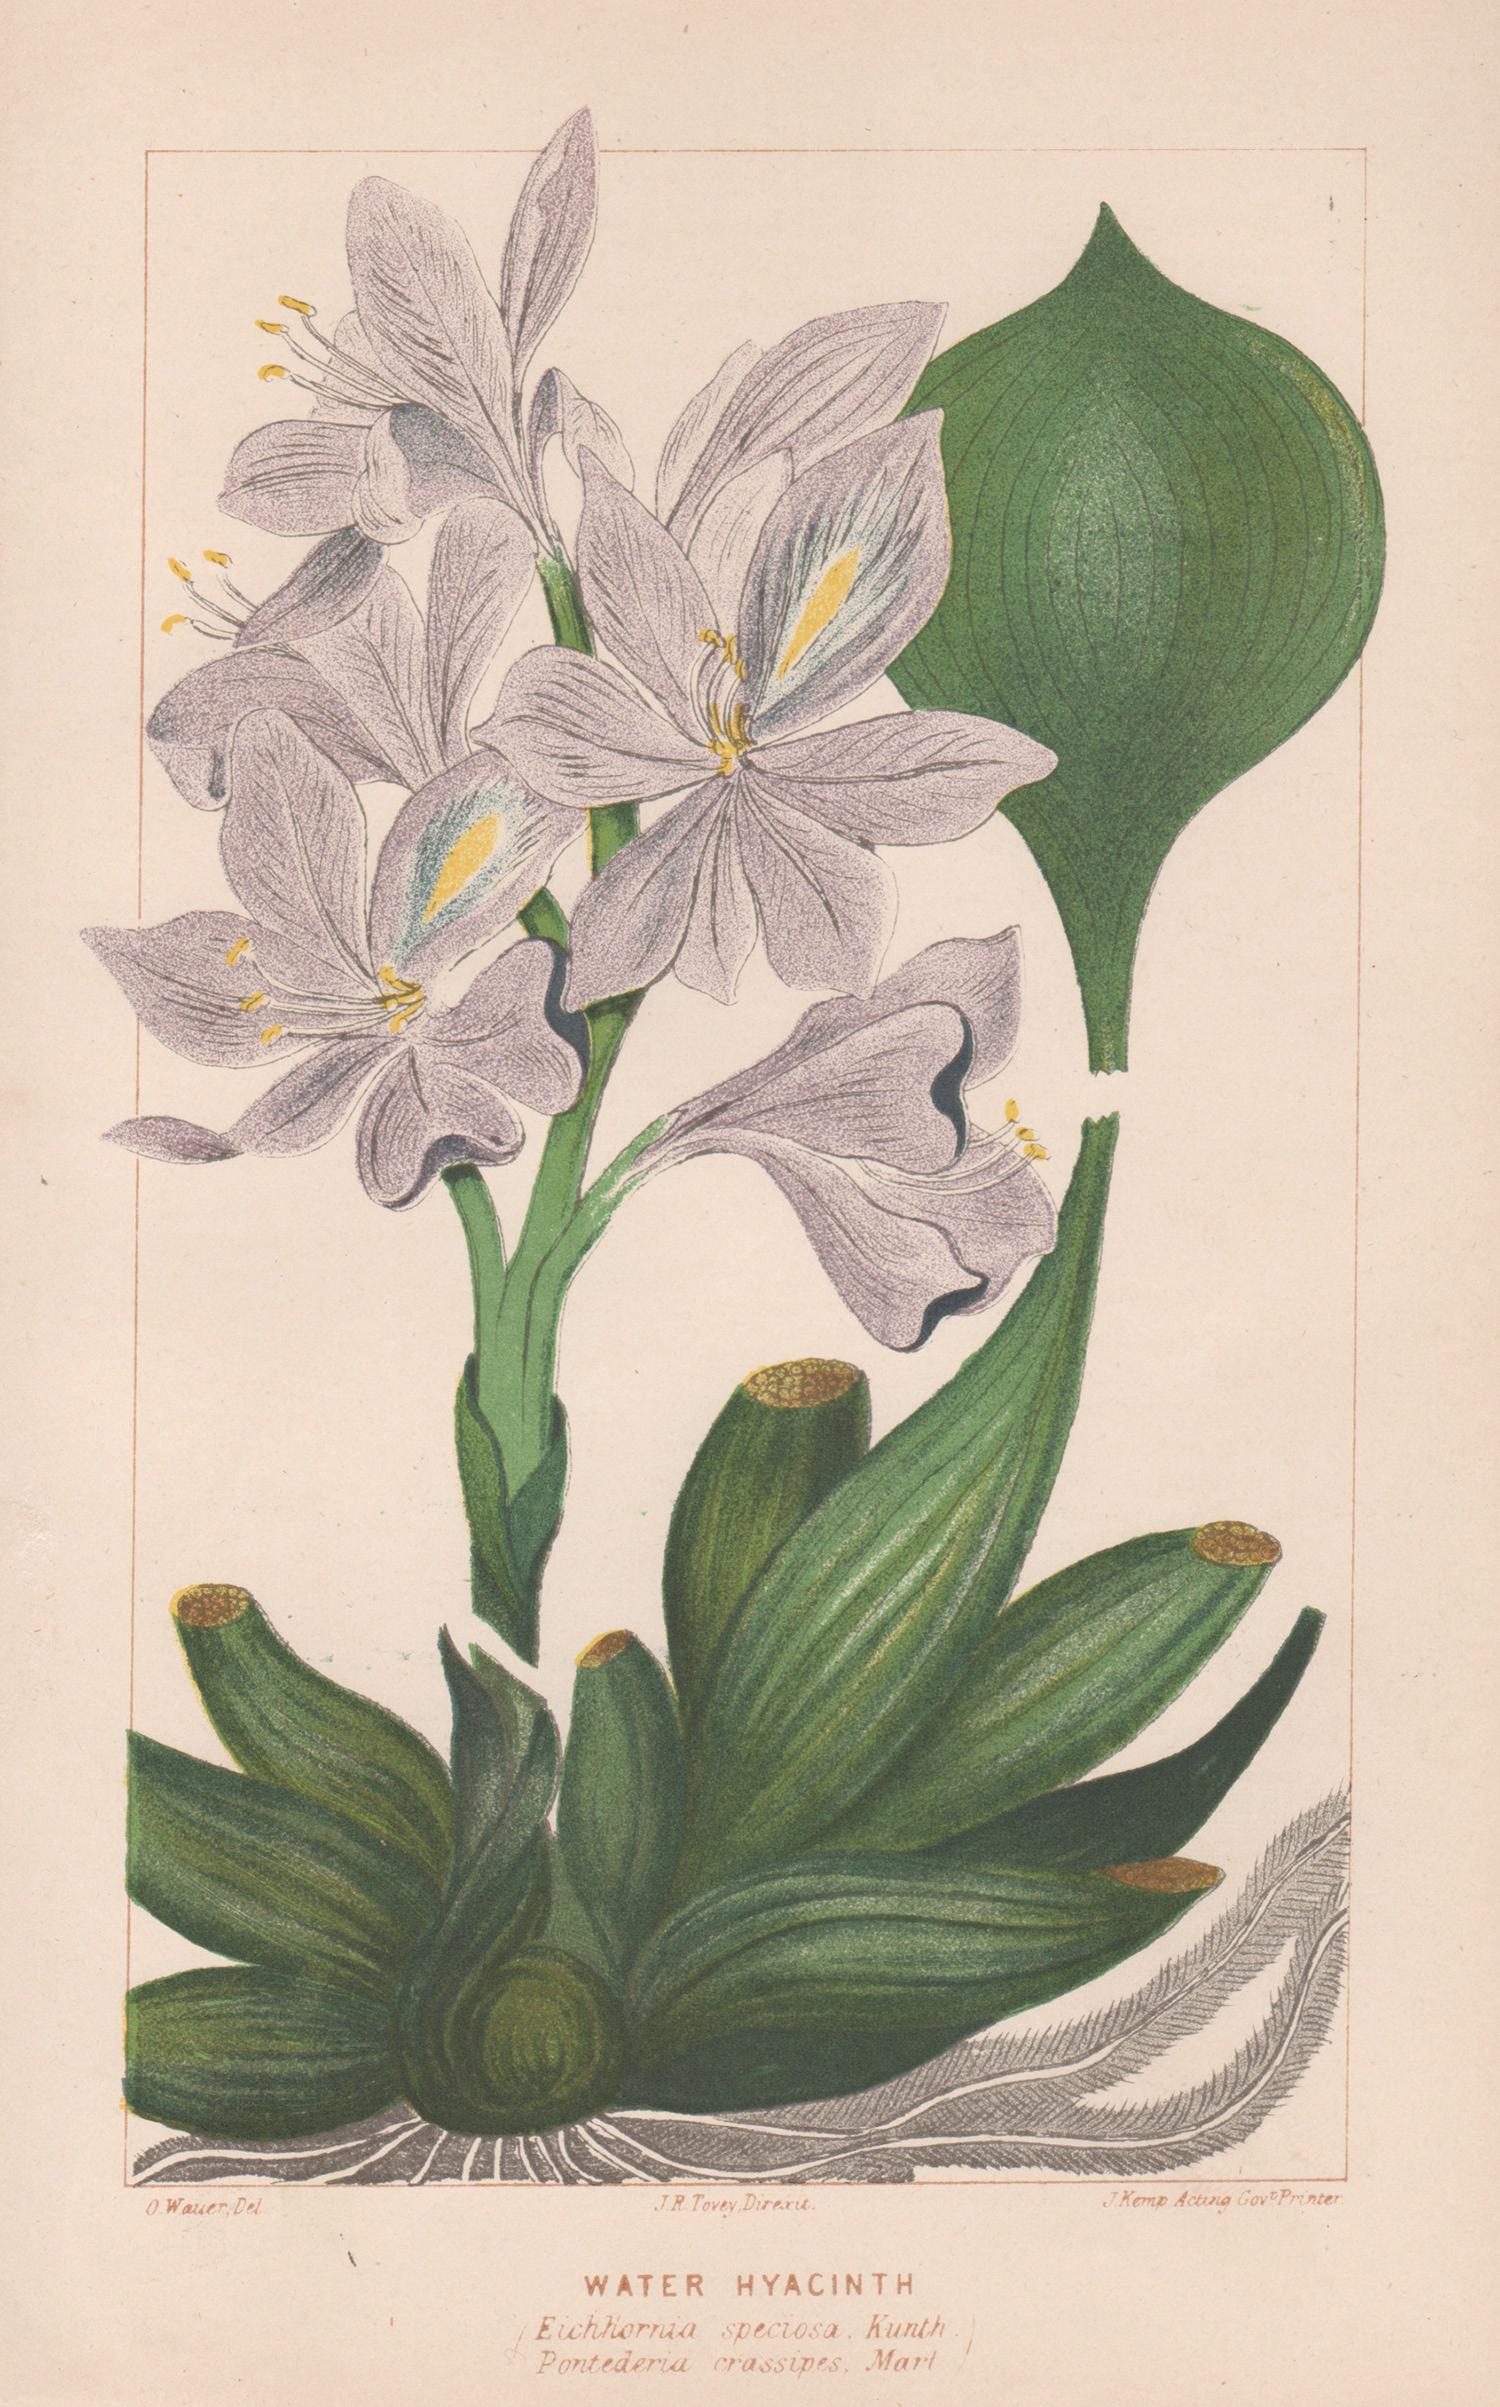 Still-Life Print O Wauer - Hyacinthe d'eau, lithographie de plantes botaniques ancienne